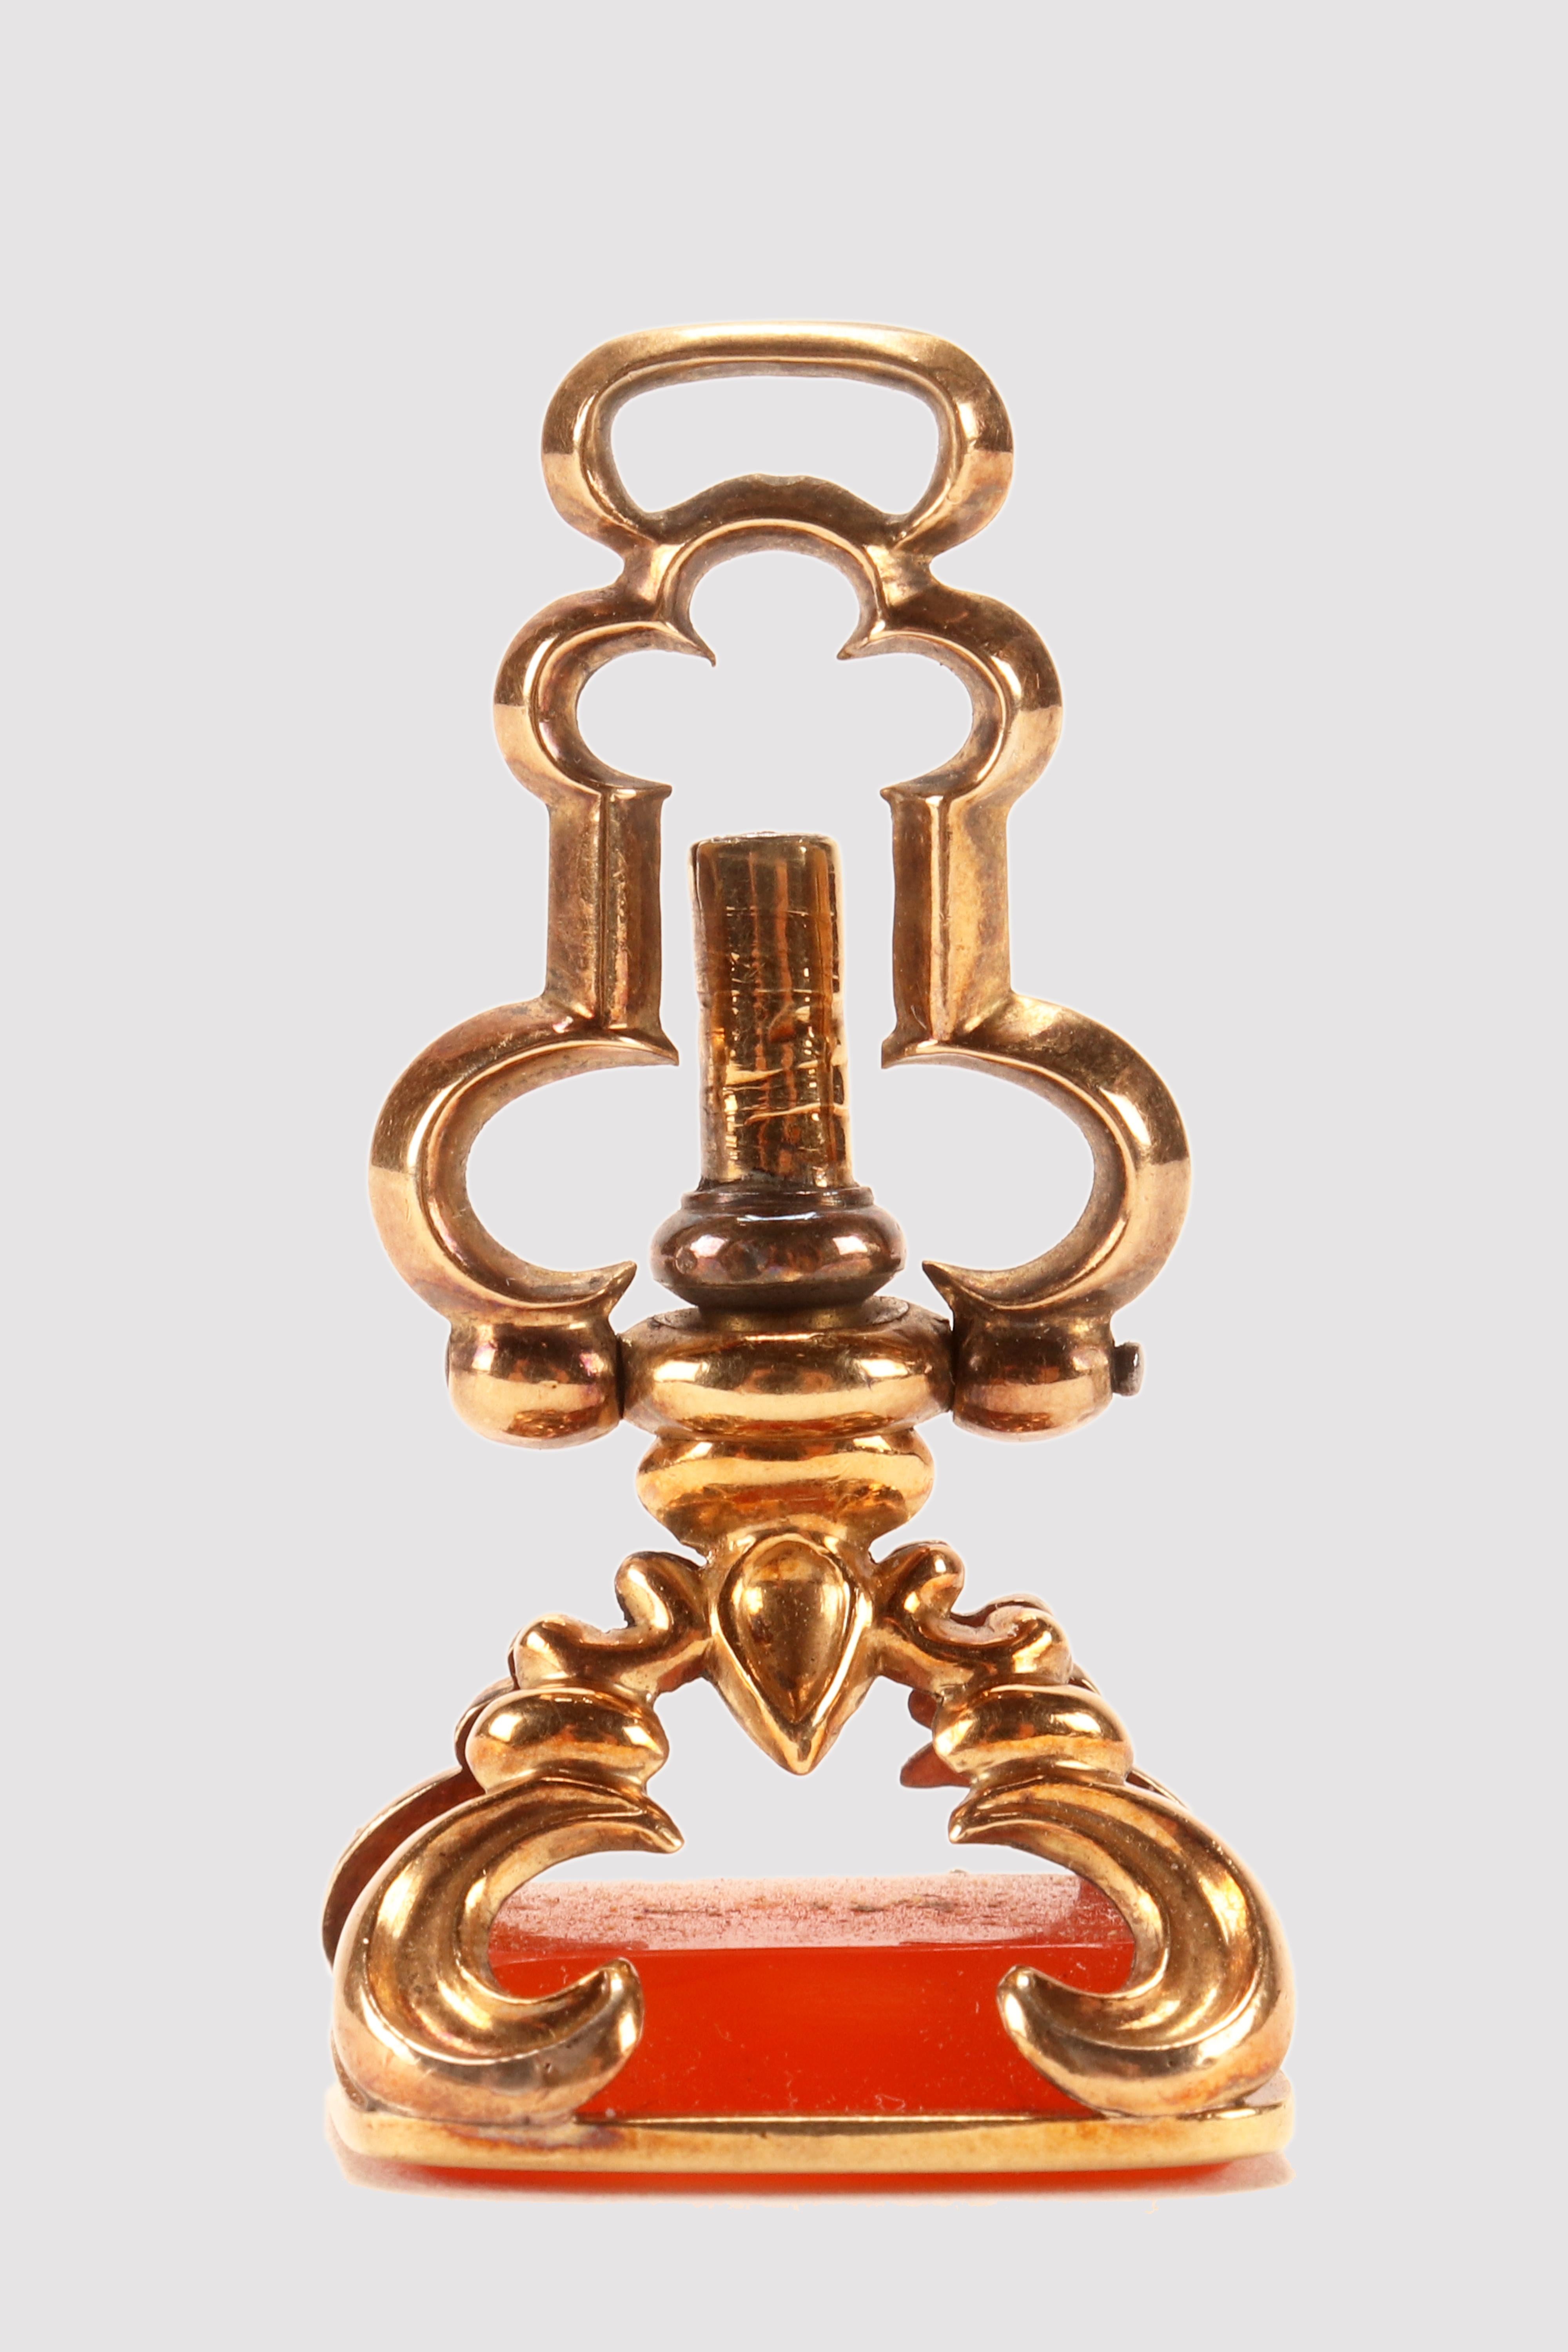 Antike 14 Kt. Gold versteckt Uhr Schlüssel Spinnerei Karneol Siegel.
Die Matrix ist aus Cornelian, nie graviert, und hat eine rechteckige Form mit abgeschrägten Kanten. Eine flache Goldleiste umschließt den Kornelkirschenrand und zwei goldene